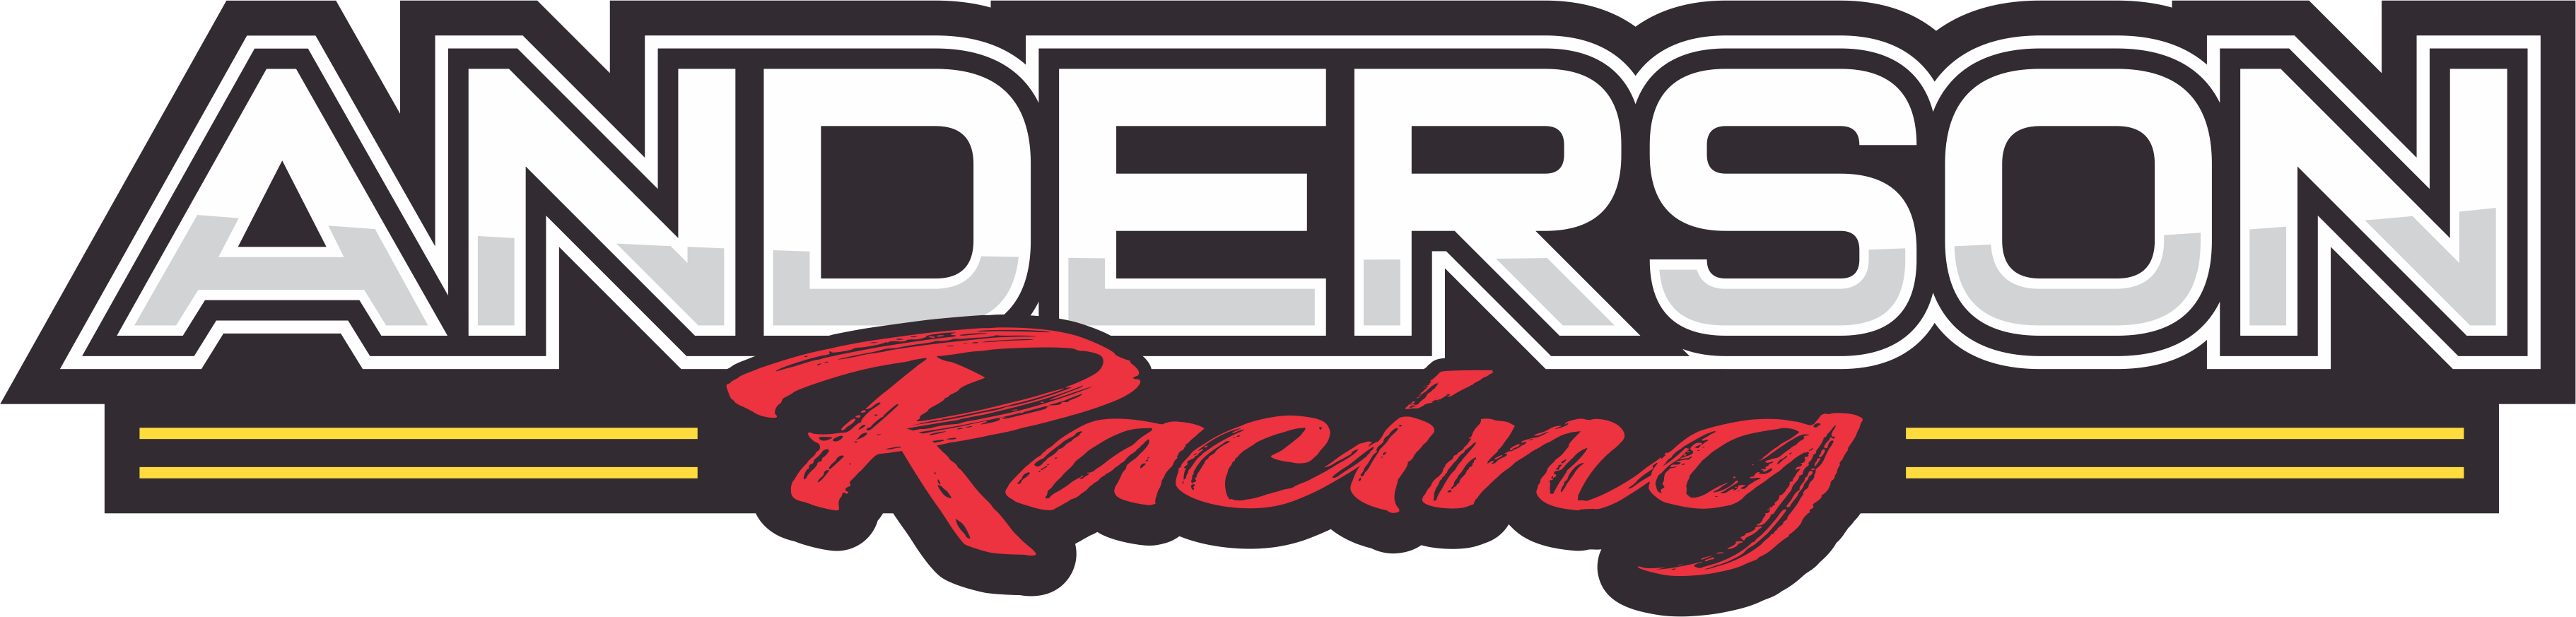 Anderson Racing Logo